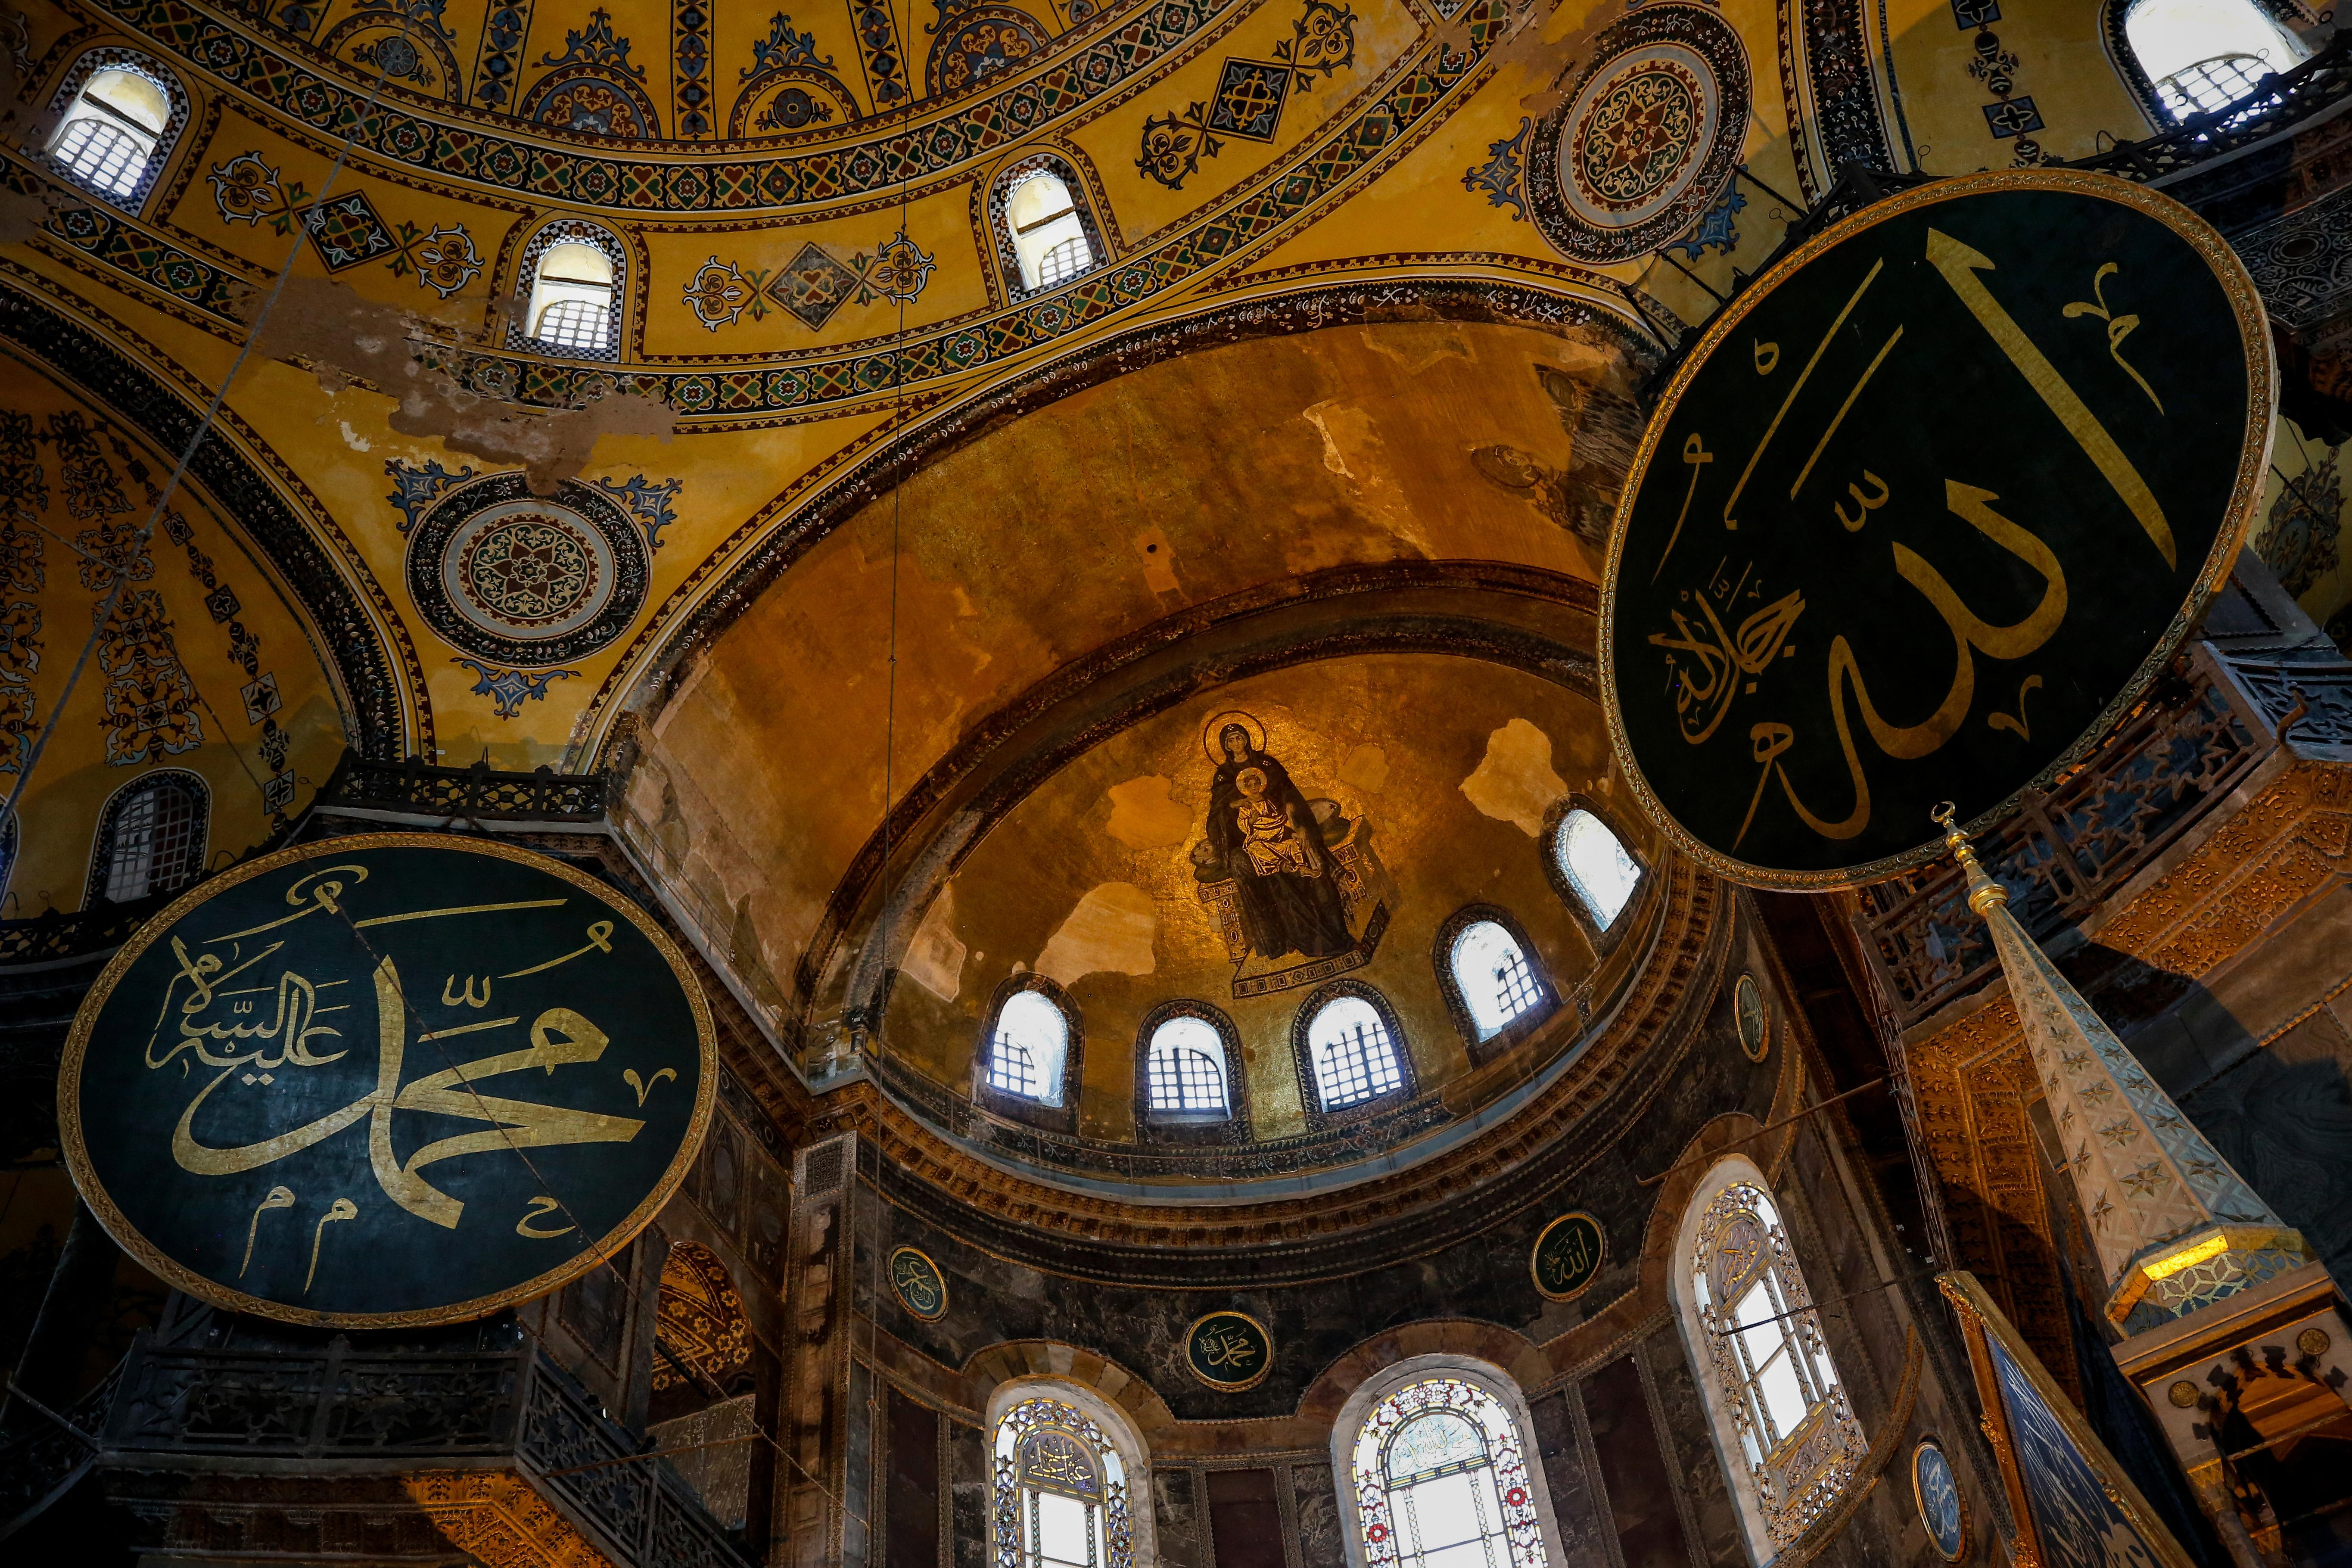 Hagia Sofia er verken moské eller museum. Det blir underkommunisert i reportasjane frå Tyrkia.